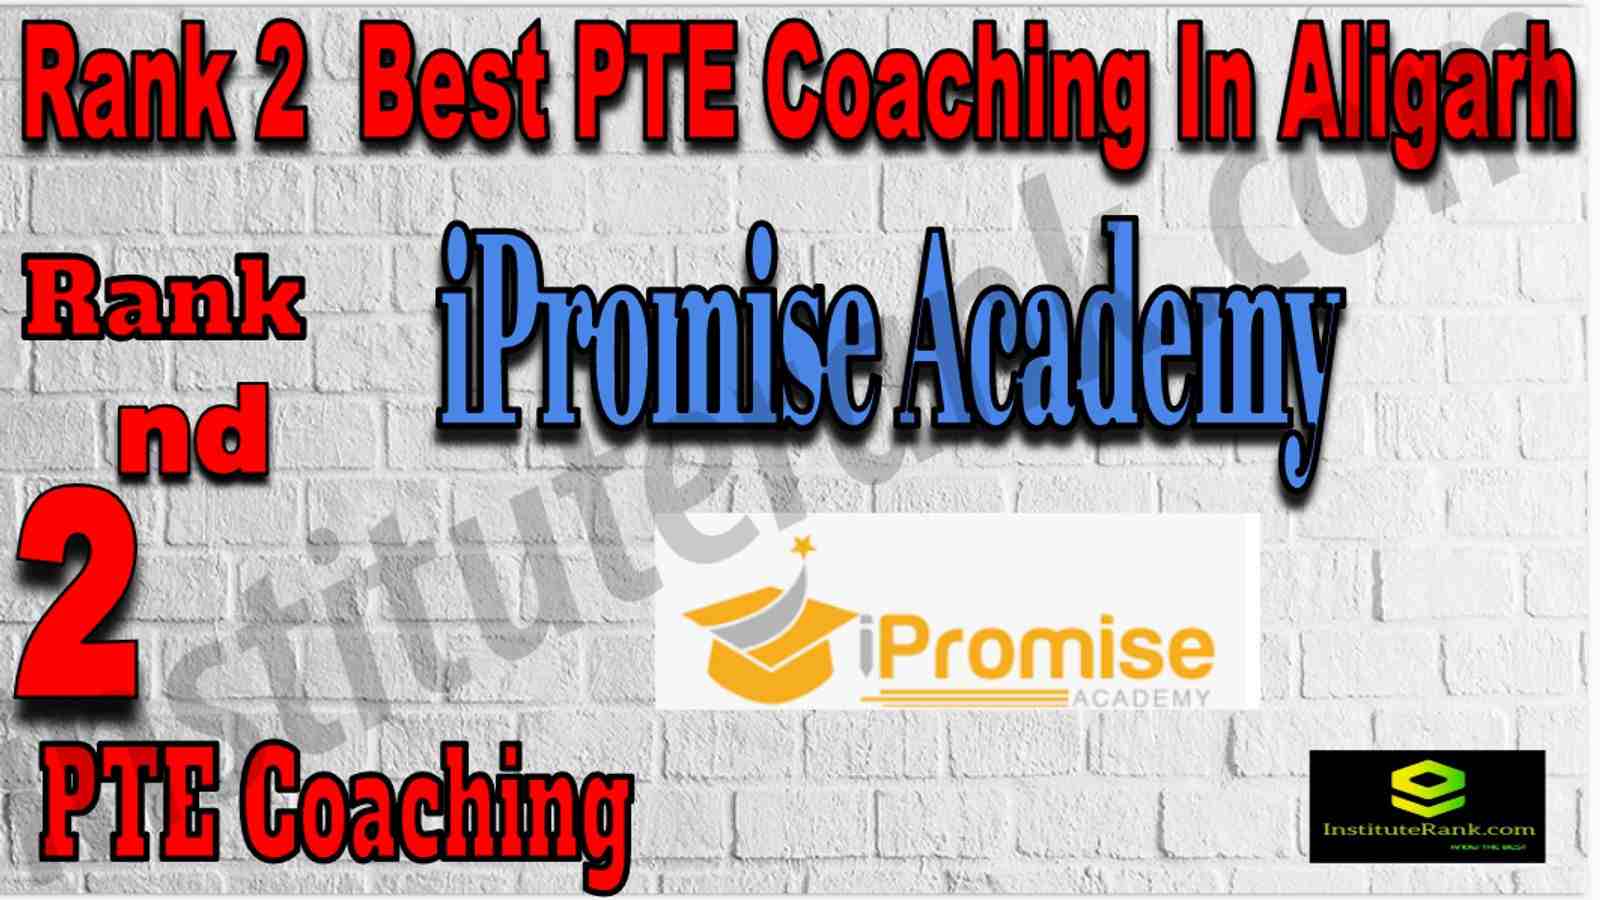 Rank 2 Best PTE Coaching In Aligarh